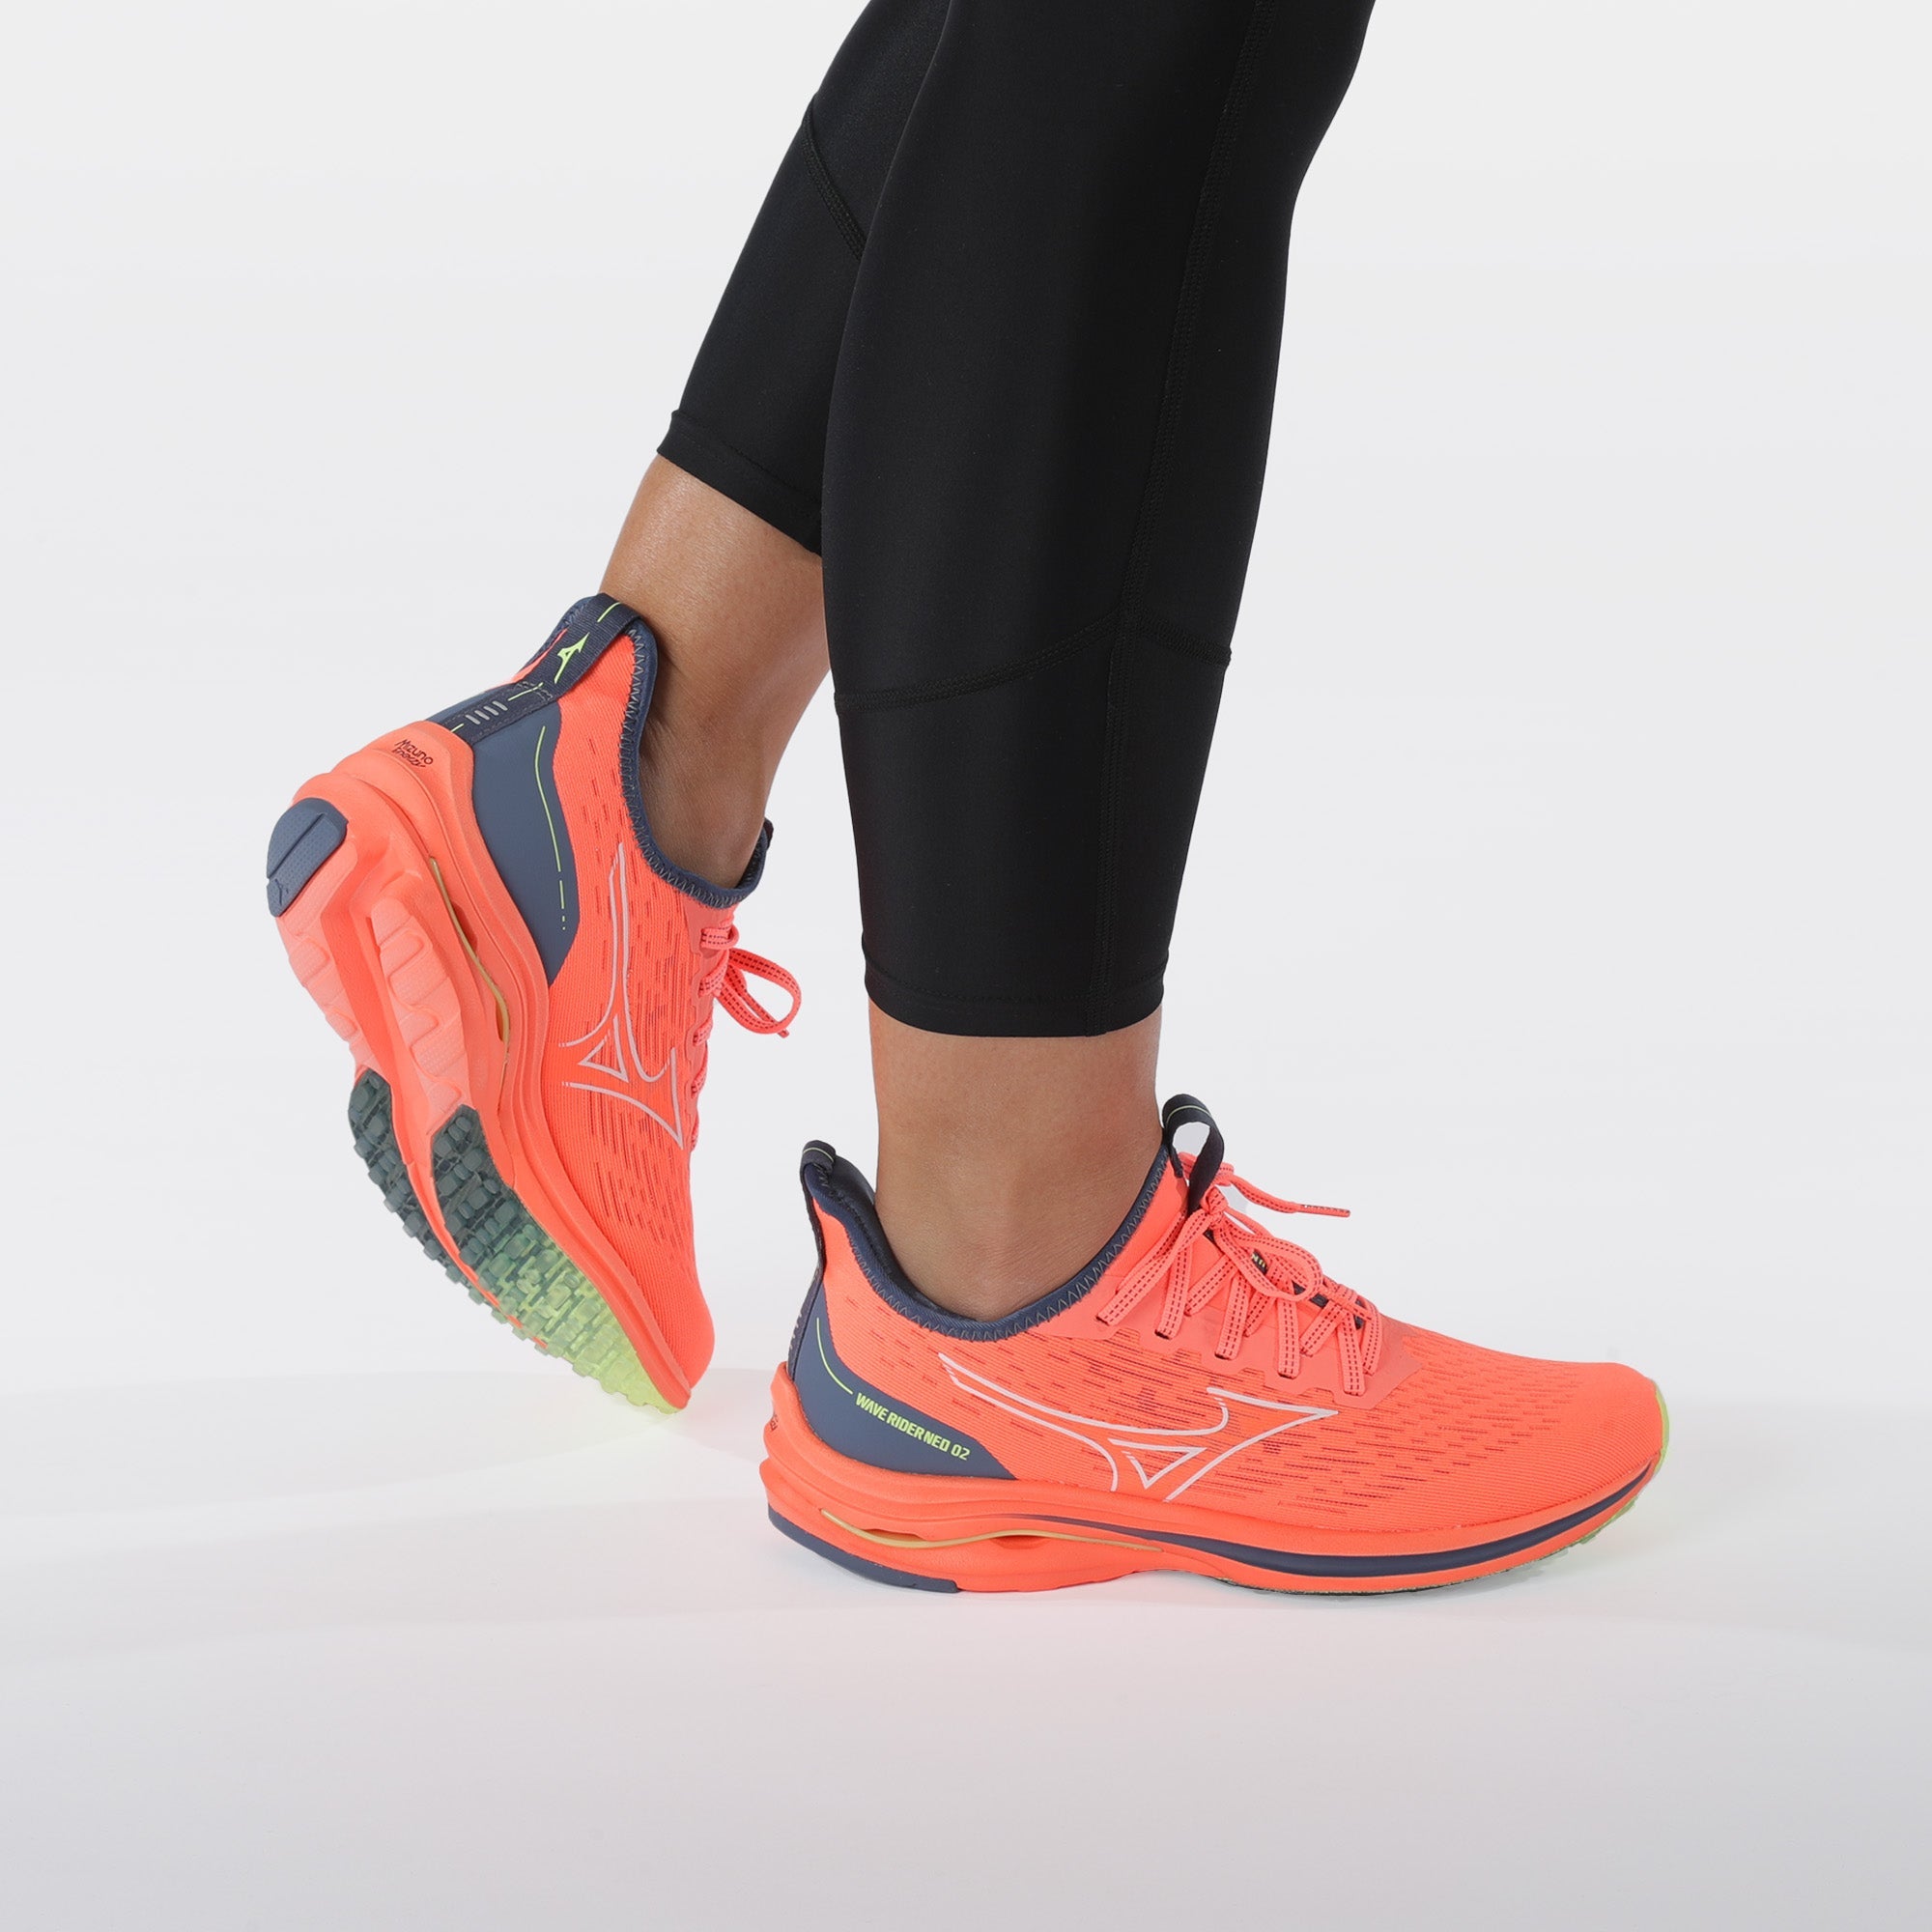 Klant De onze spreken WAVE RIDER NEO 2 | Women's Running Shoes | Mizuno Australia